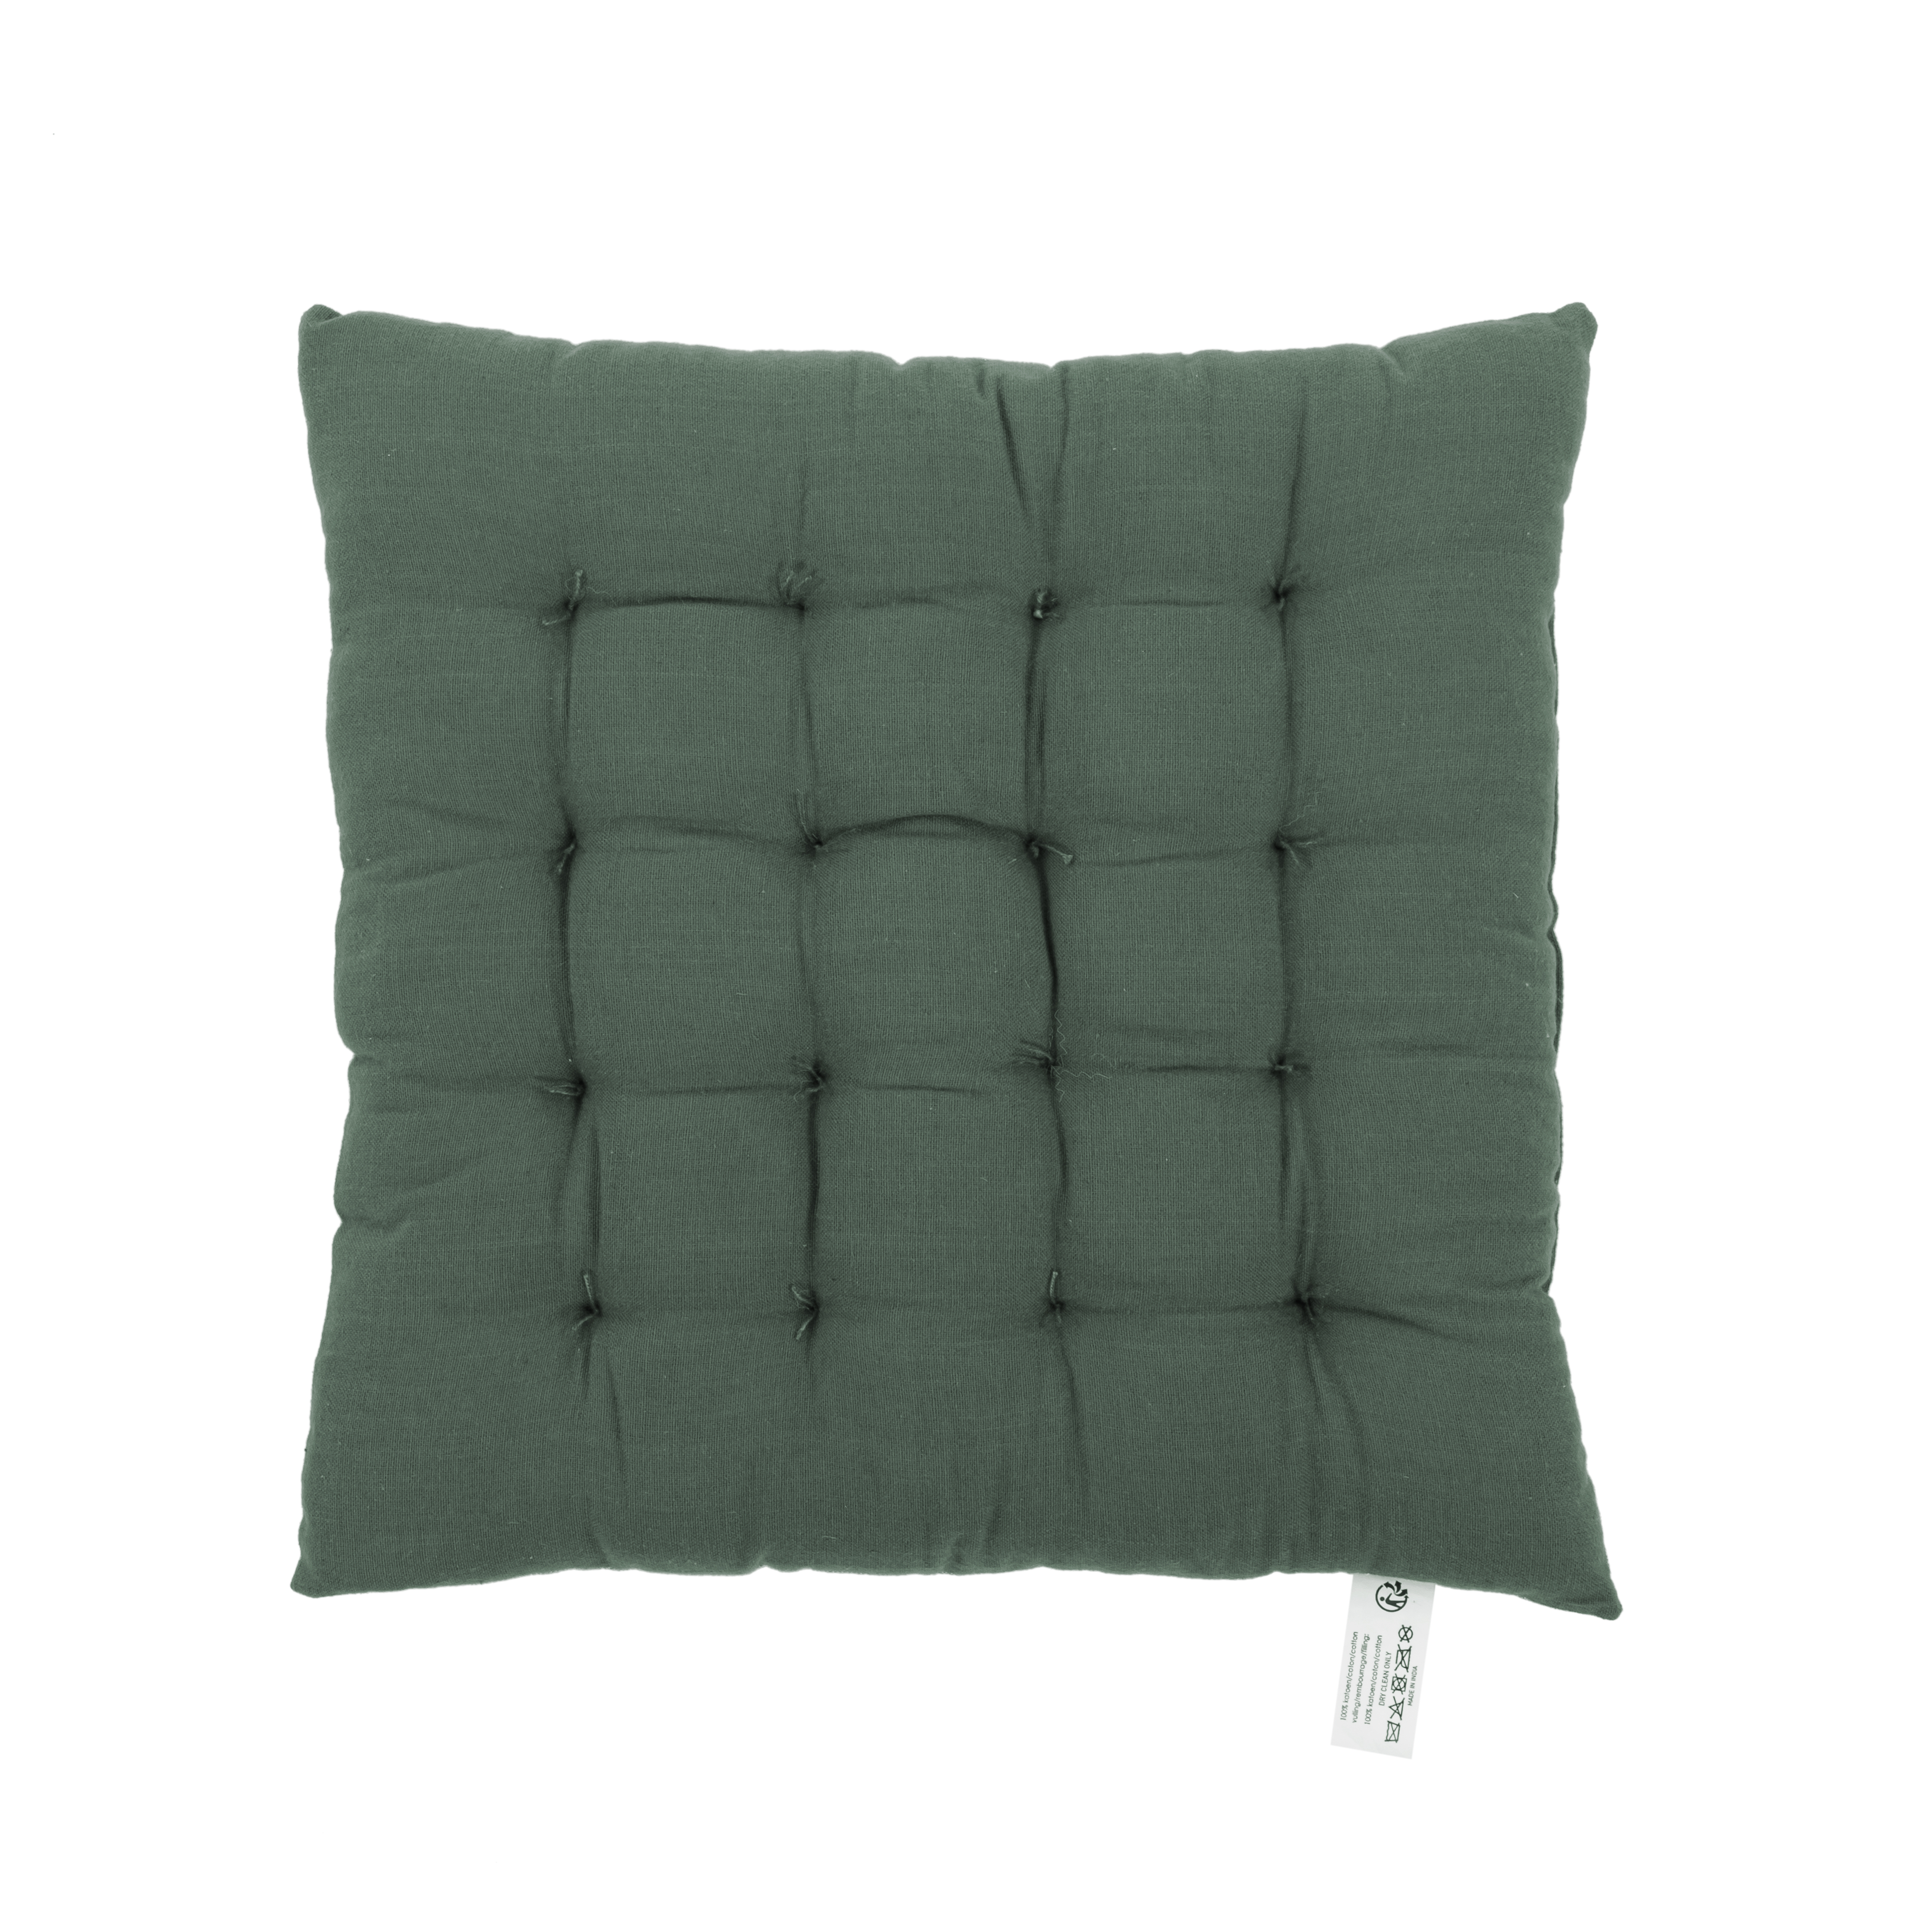 Galette de chaise CHAMBRAY 40x40cm -16 thuck, vert